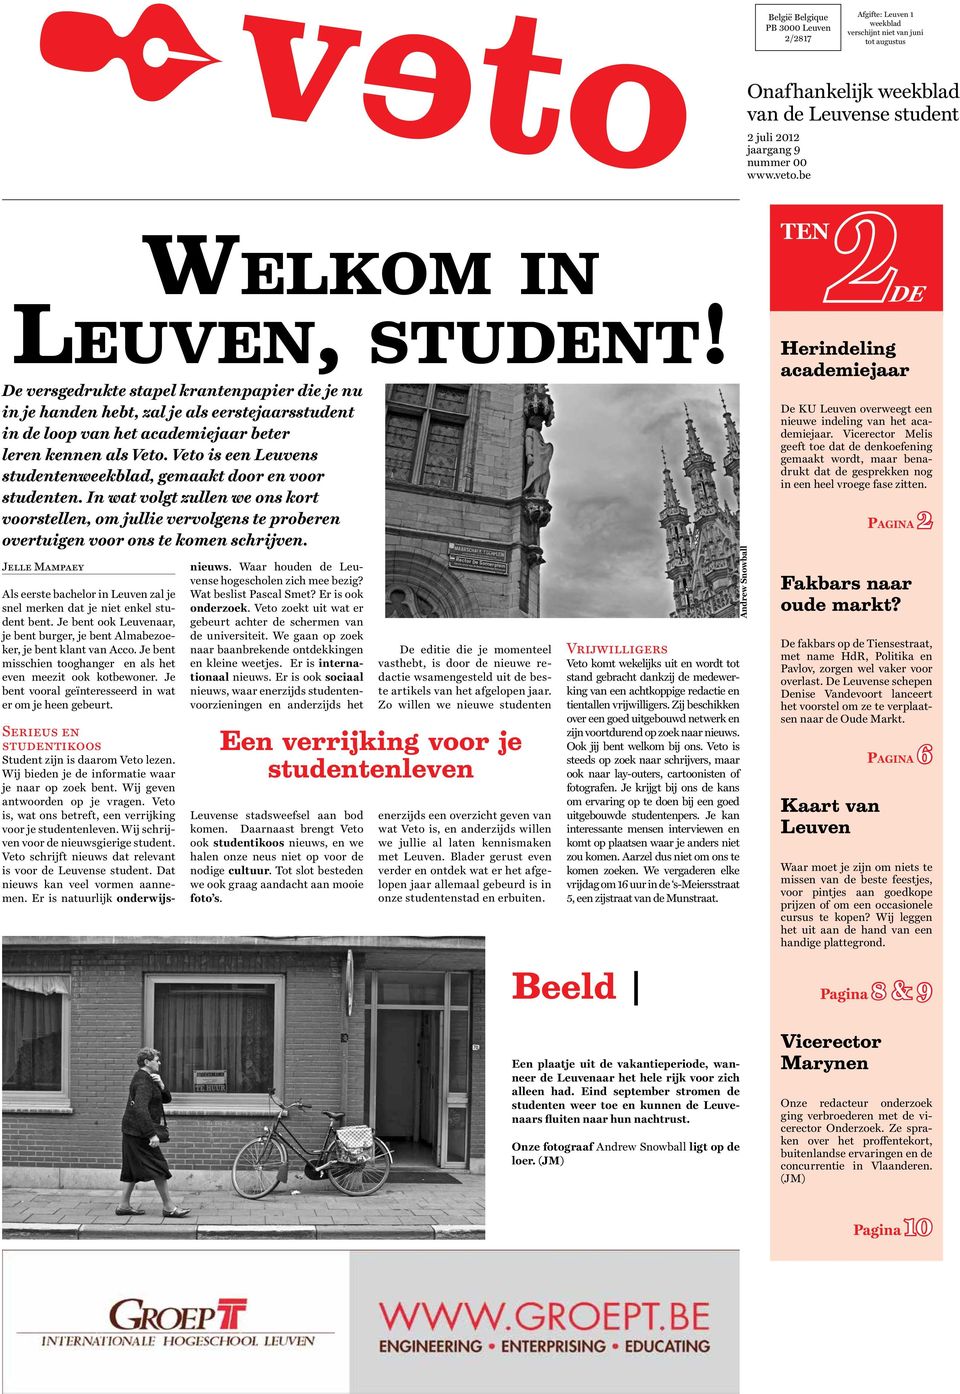 Veto is een Leuvens studentenweekblad, gemaakt door en voor studenten. In wat volgt zullen we ons kort voorstellen, om jullie vervolgens te proberen overtuigen voor ons te komen schrijven.